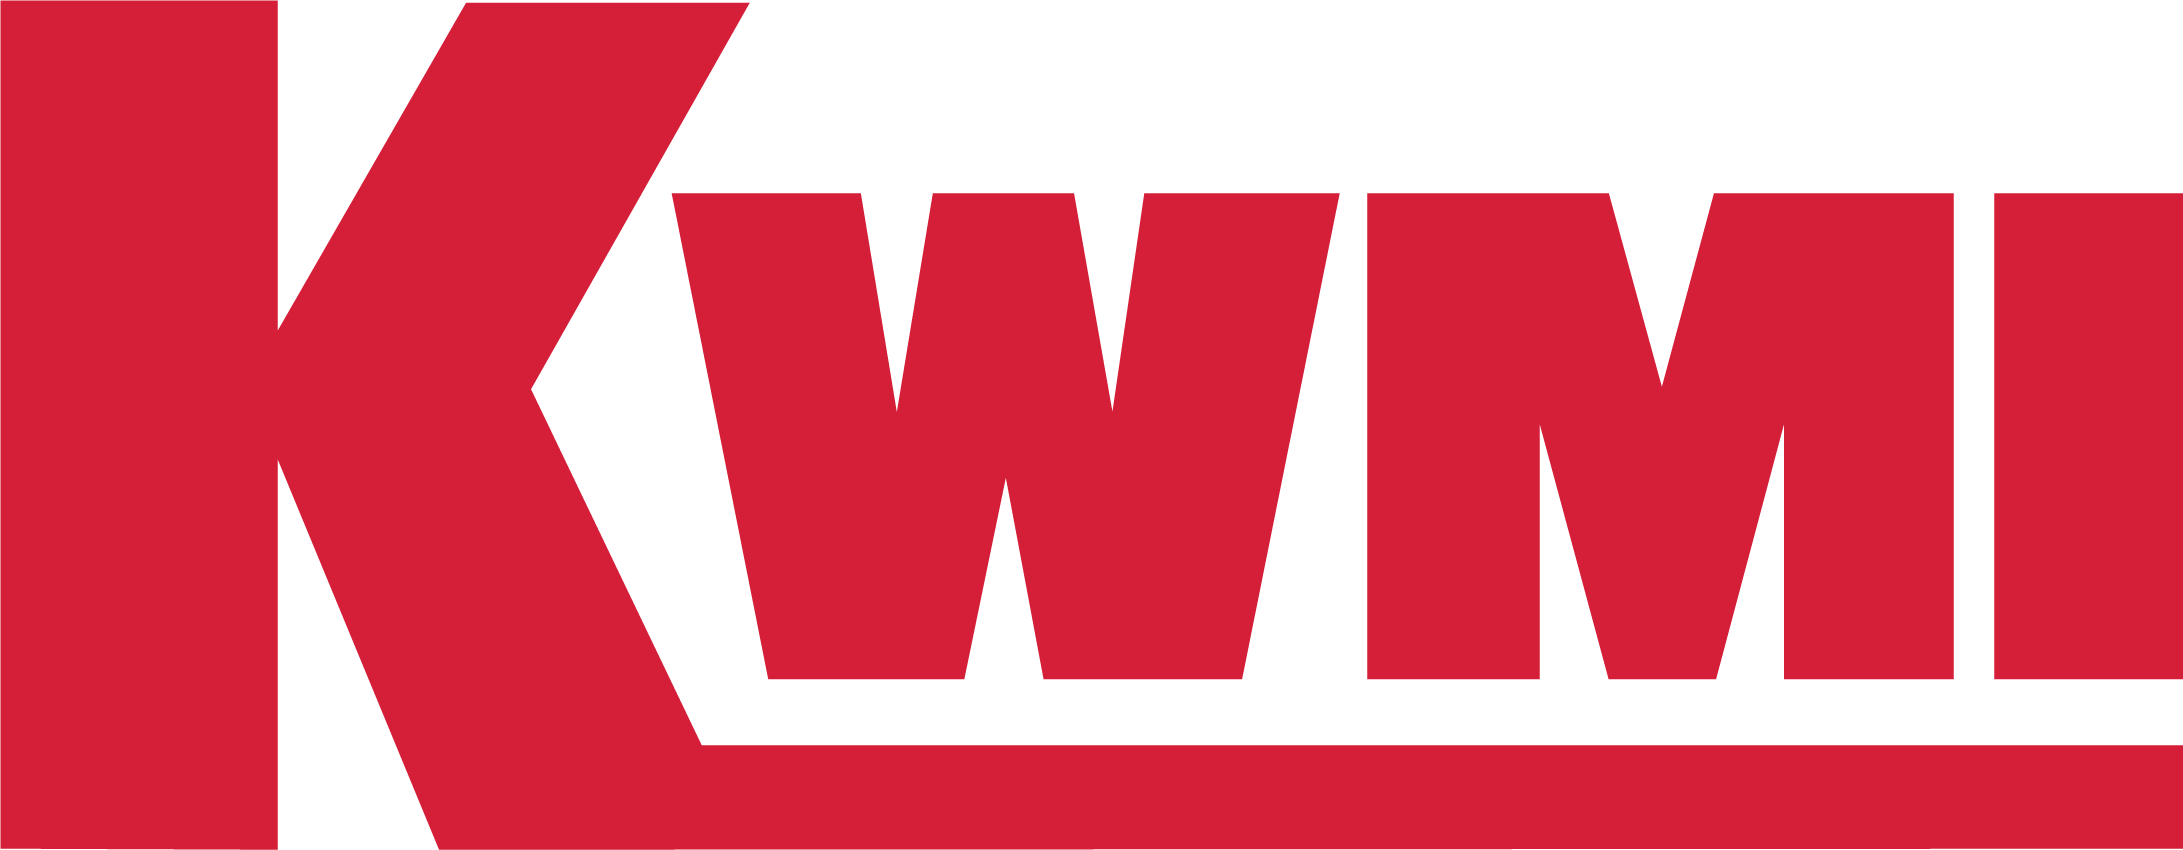 KWMI_Logo.png